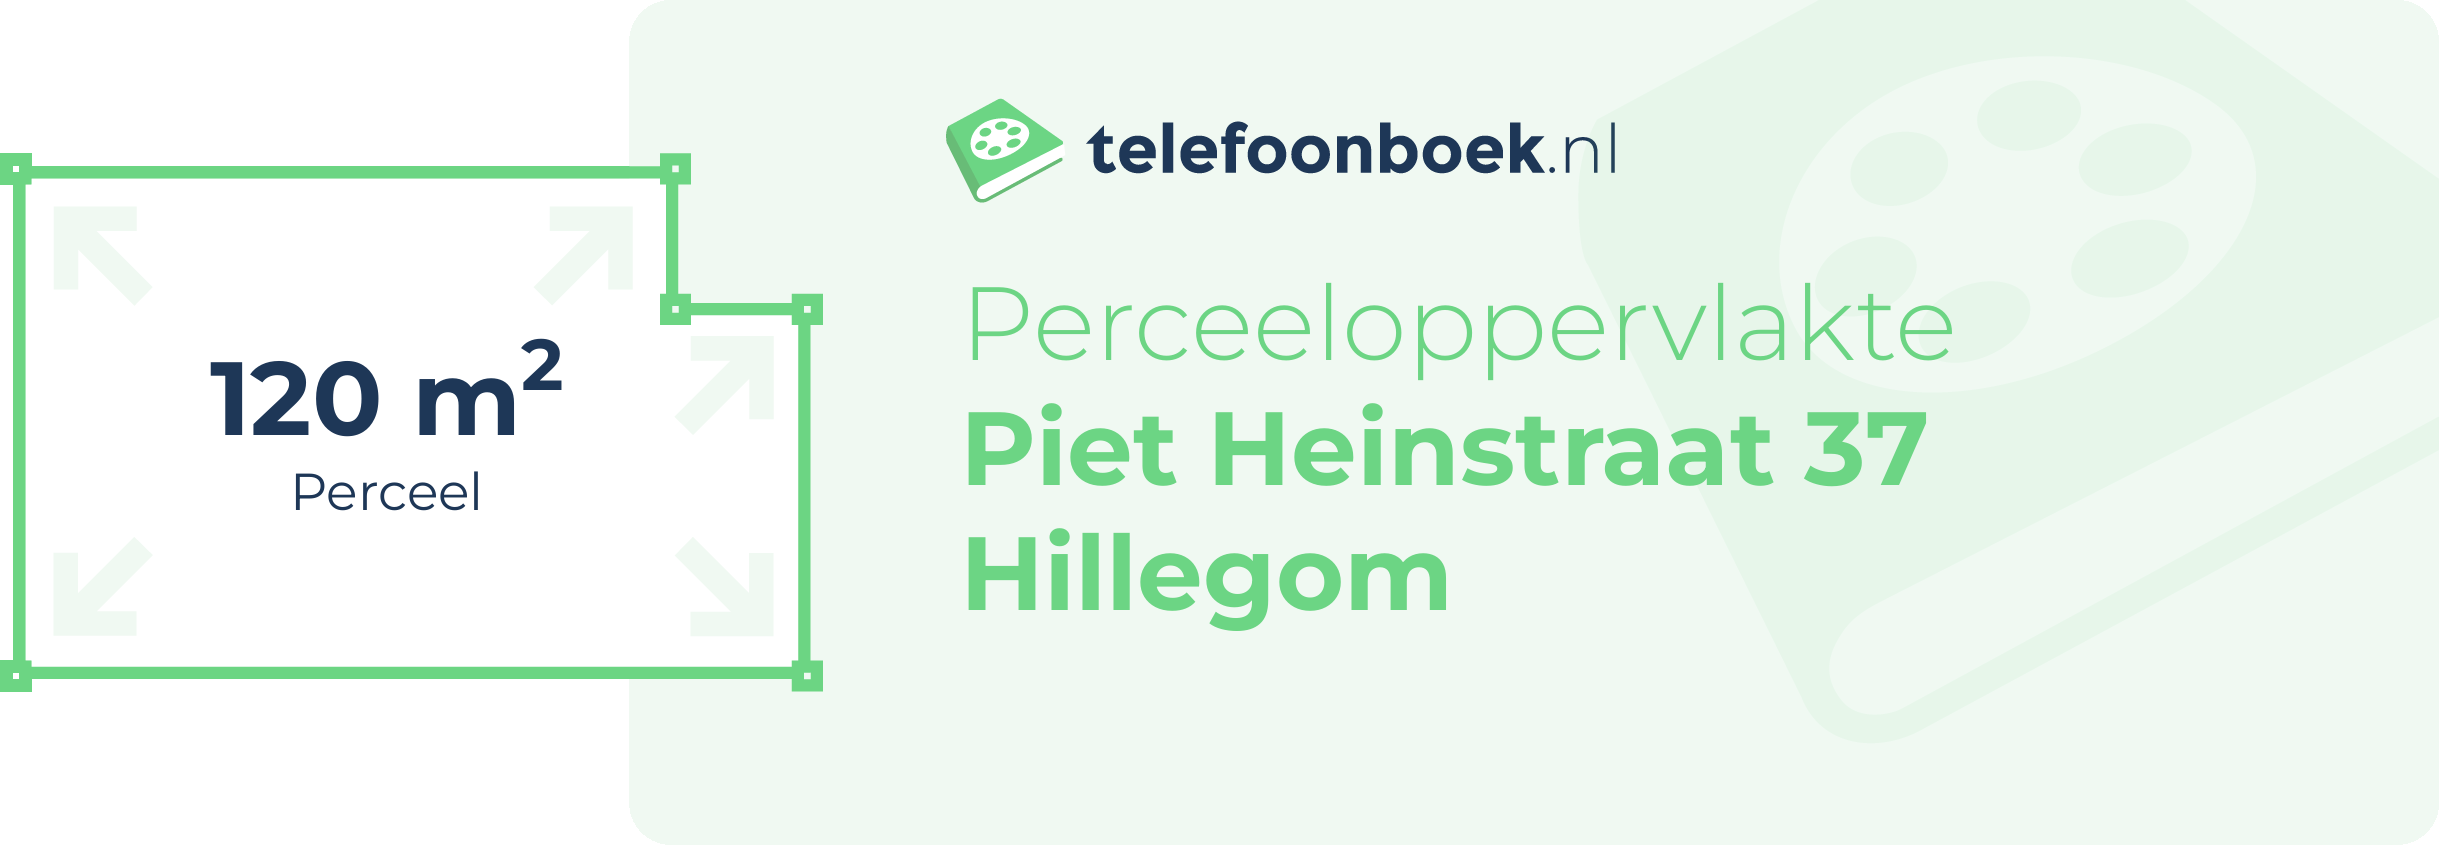 Perceeloppervlakte Piet Heinstraat 37 Hillegom